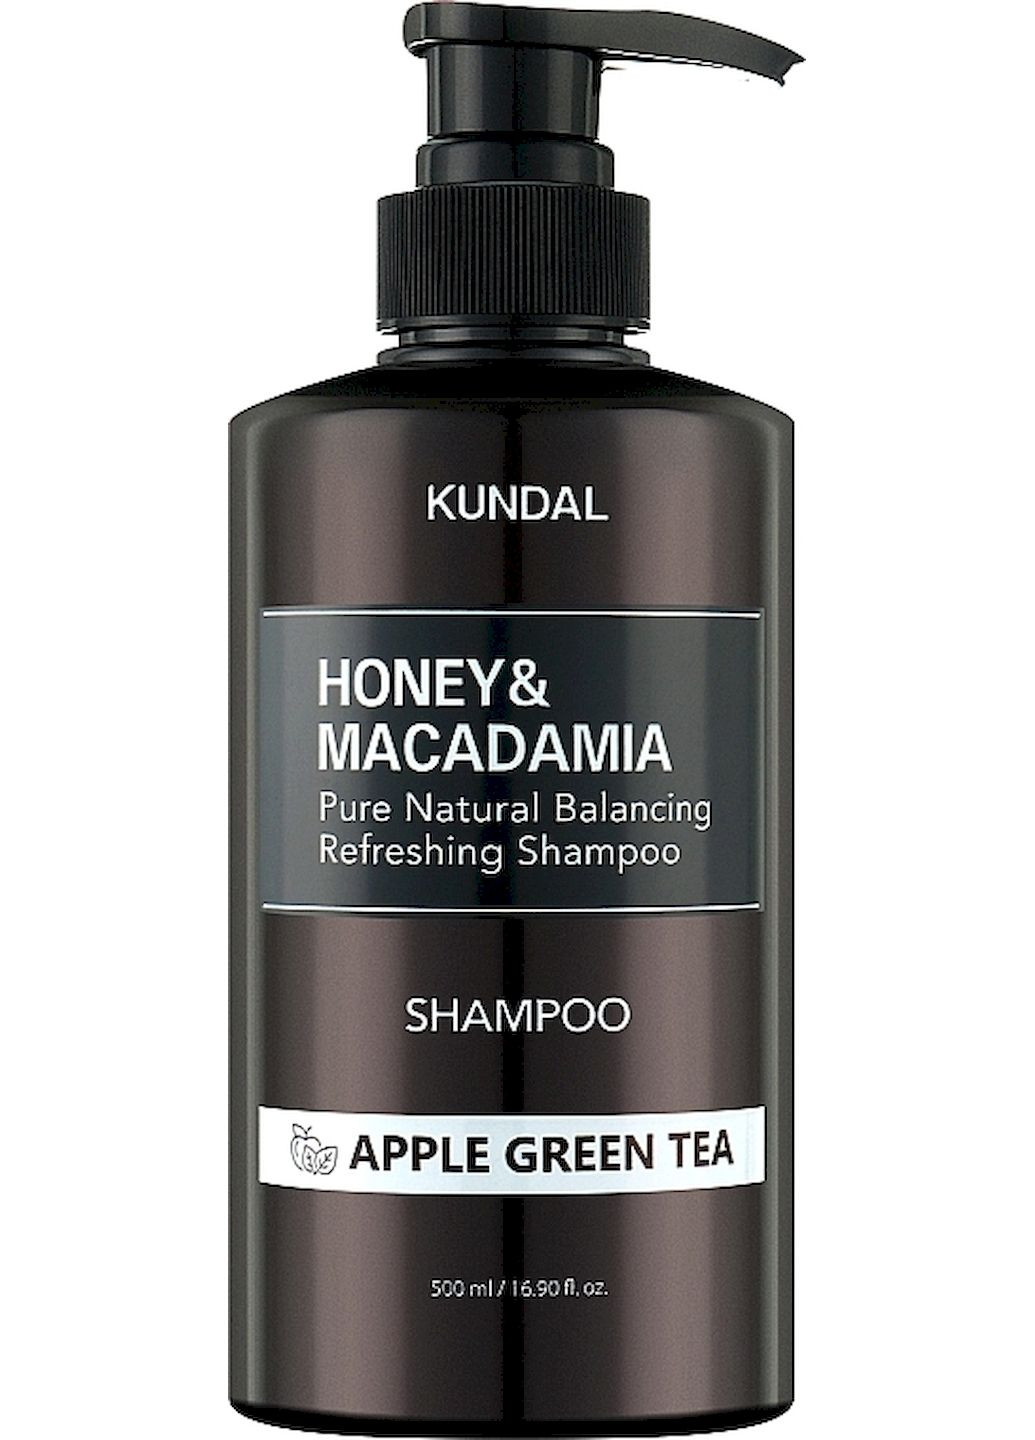 Бессульфатный шампунь Honey & Macadamia Nature Shampoo Apple Green Tea яблоко-зеленый чай, 500 мл Kundal (292790325)